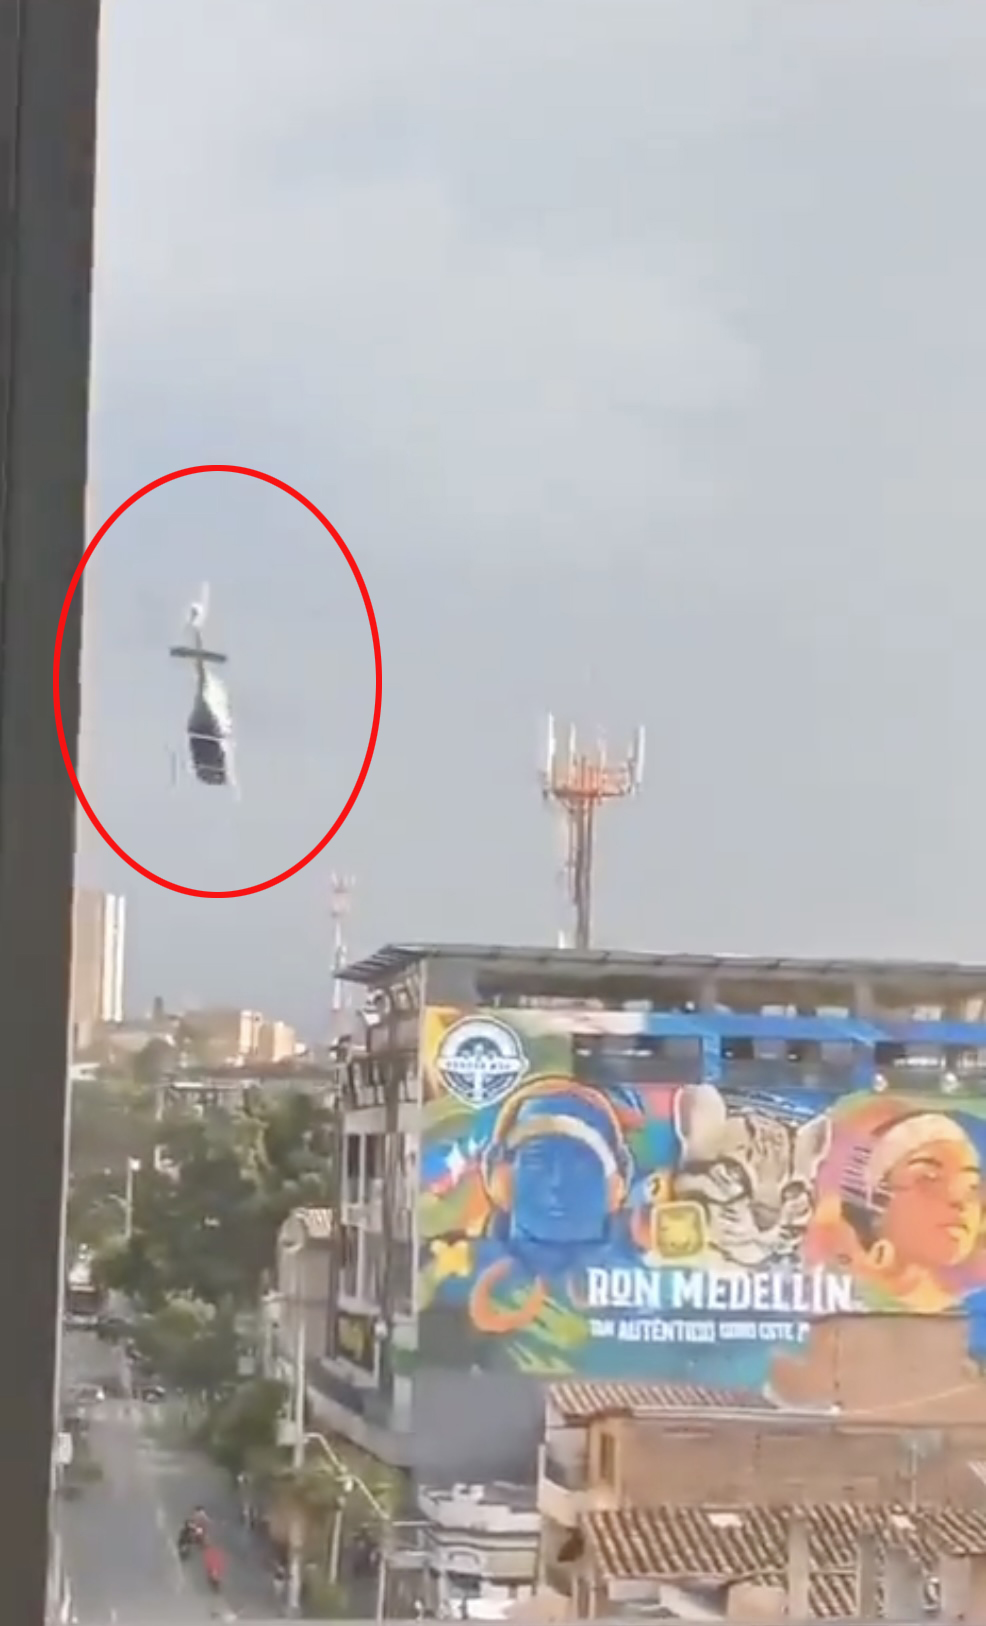 Frühere Aufnahmen haben den Moment festgehalten, in dem der Hubschrauber auf den Boden stürzt